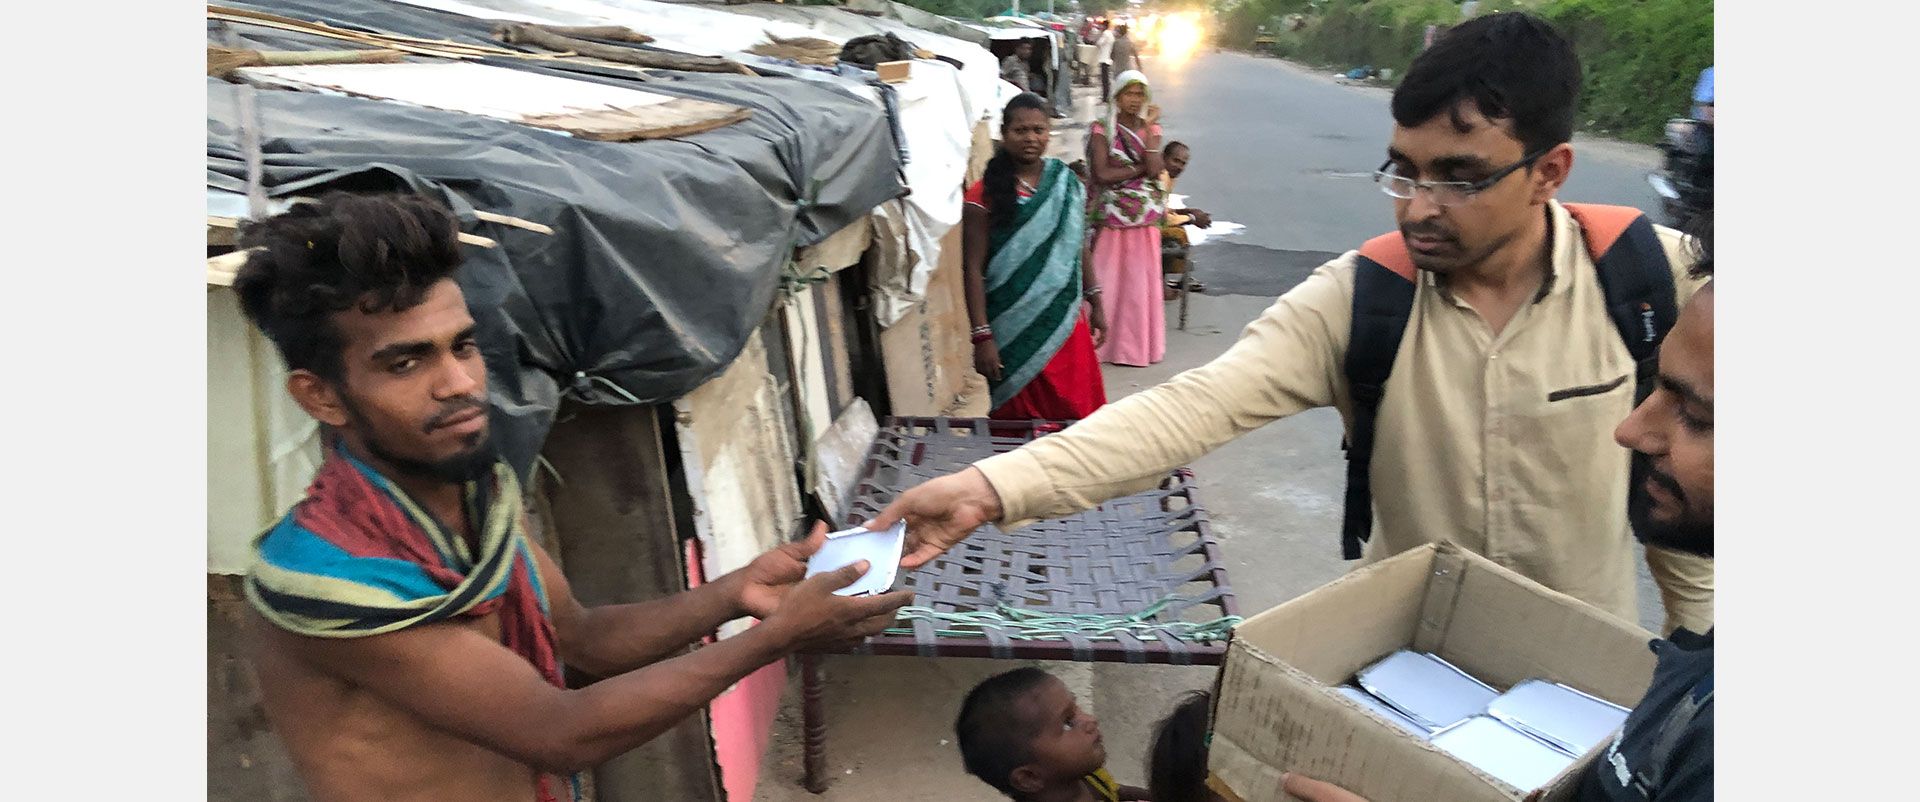 distributing food to homeless family